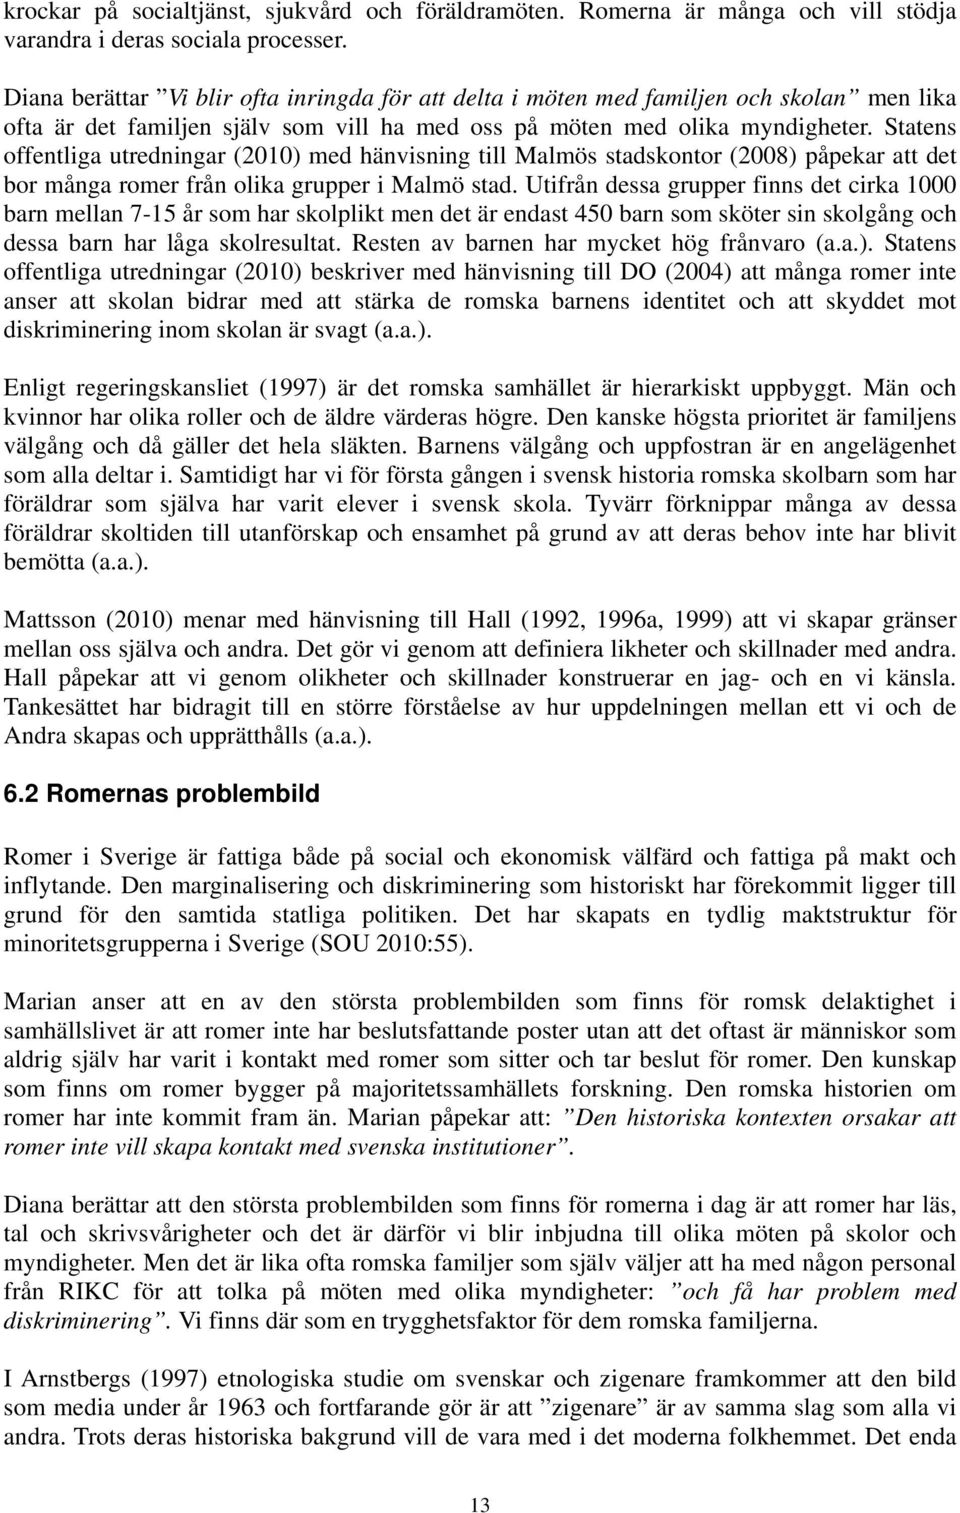 Statens offentliga utredningar (2010) med hänvisning till Malmös stadskontor (2008) påpekar att det bor många romer från olika grupper i Malmö stad.